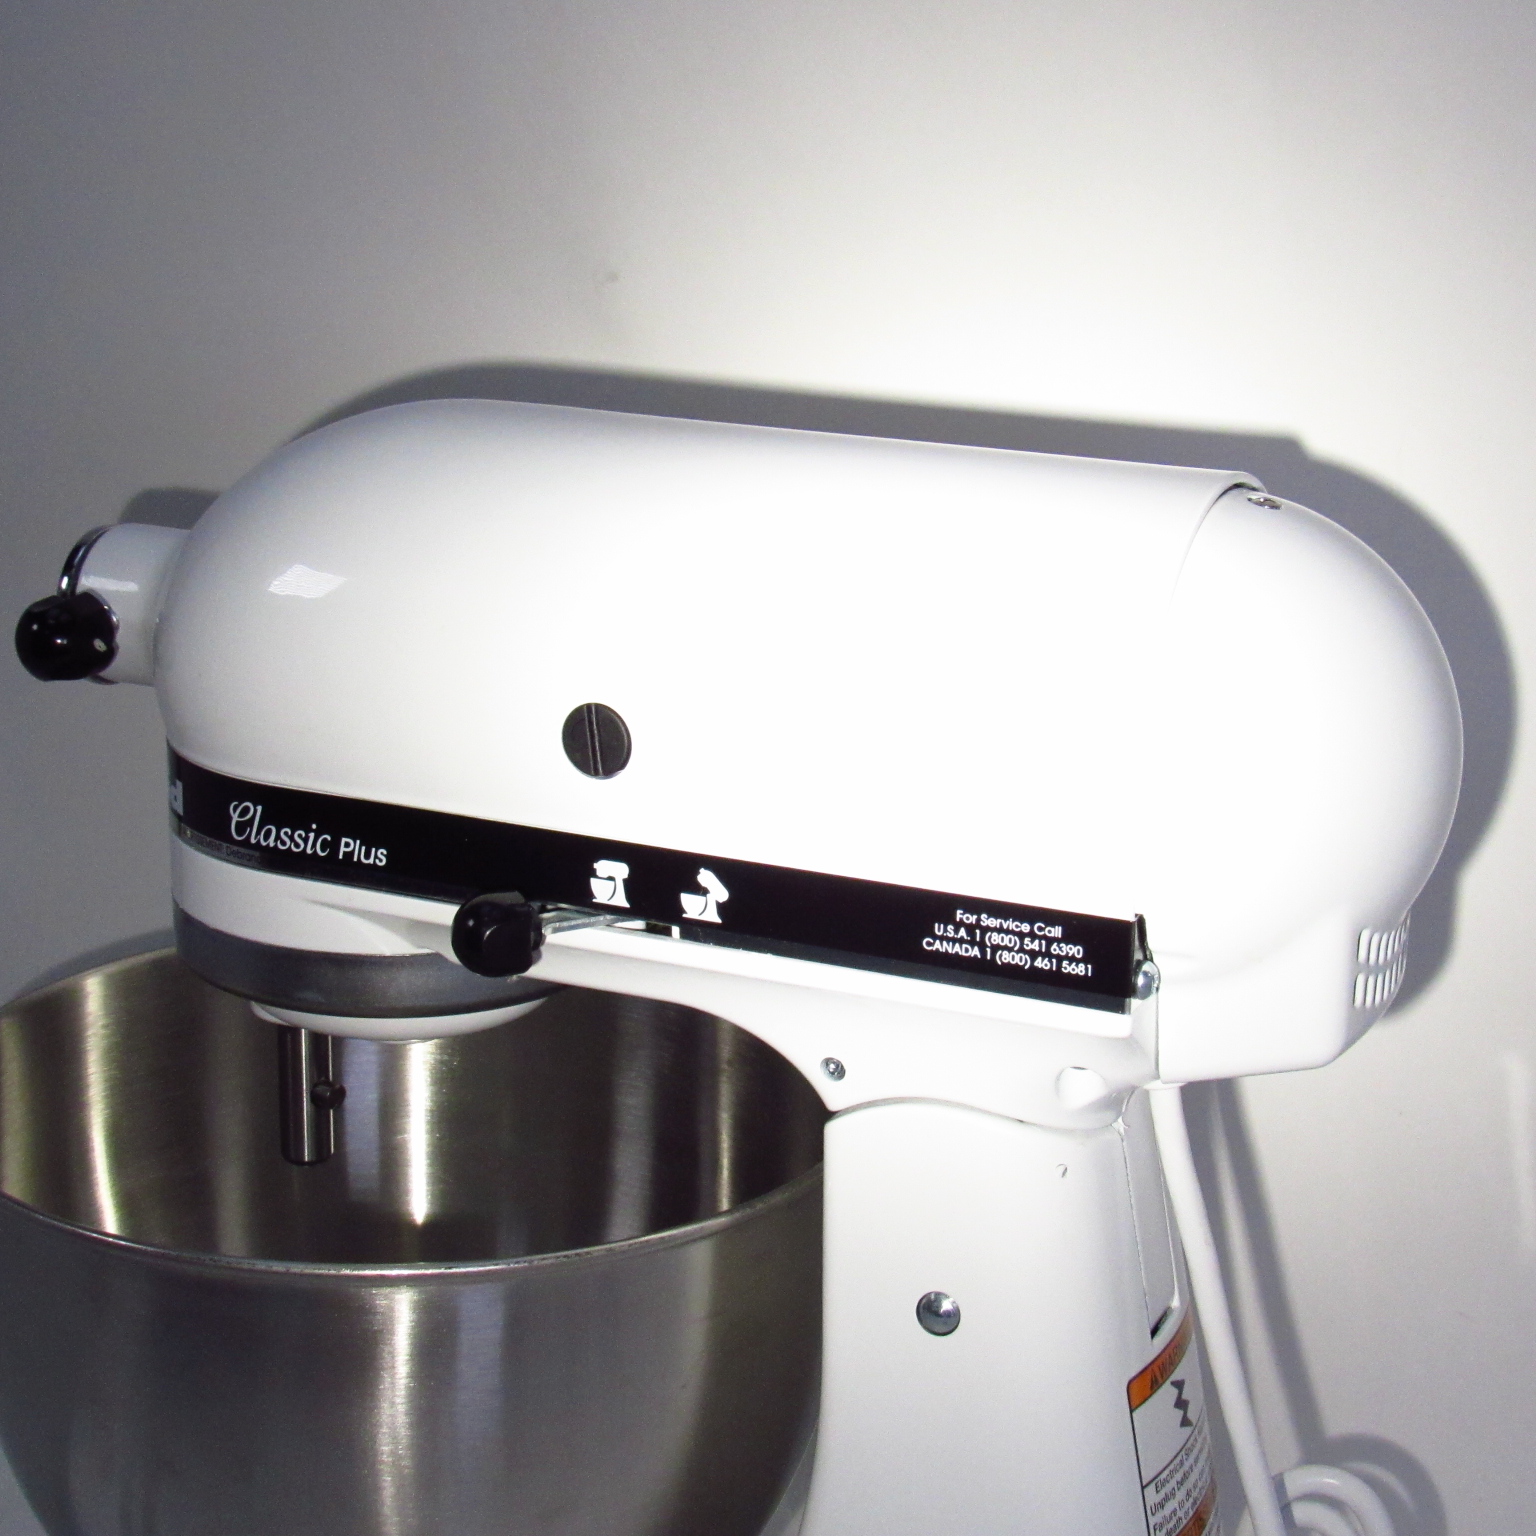 KitchenAid KSM75WH Classic Plus Tilt-Head Stand Mixer - White, 4.5